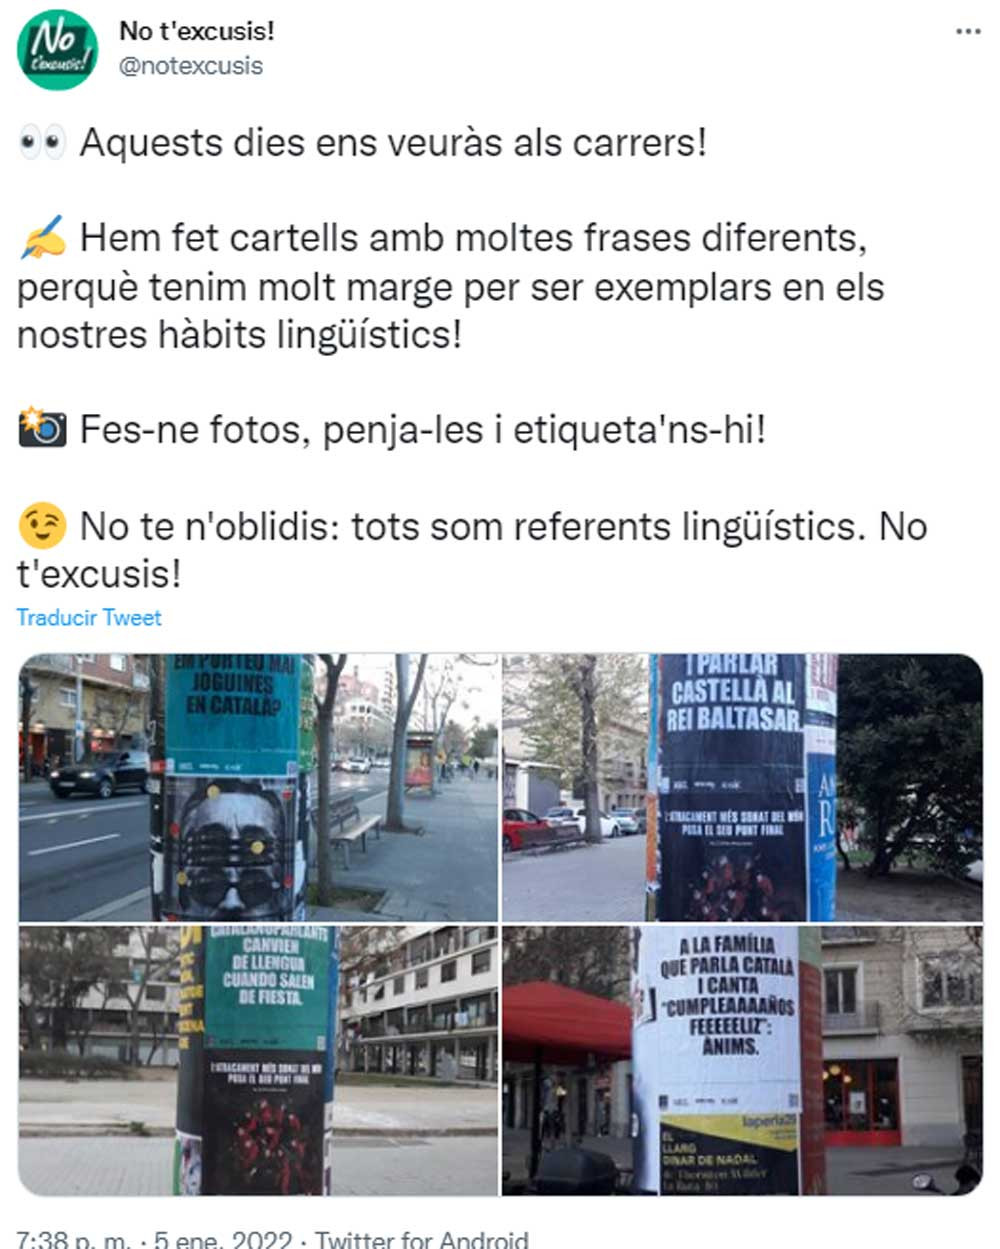 Carteles contra el uso del castellano entre los catalanohablantes en los postes publicitarios del Ayuntamiento de Barcelona / @notexcusis (TWITTER)